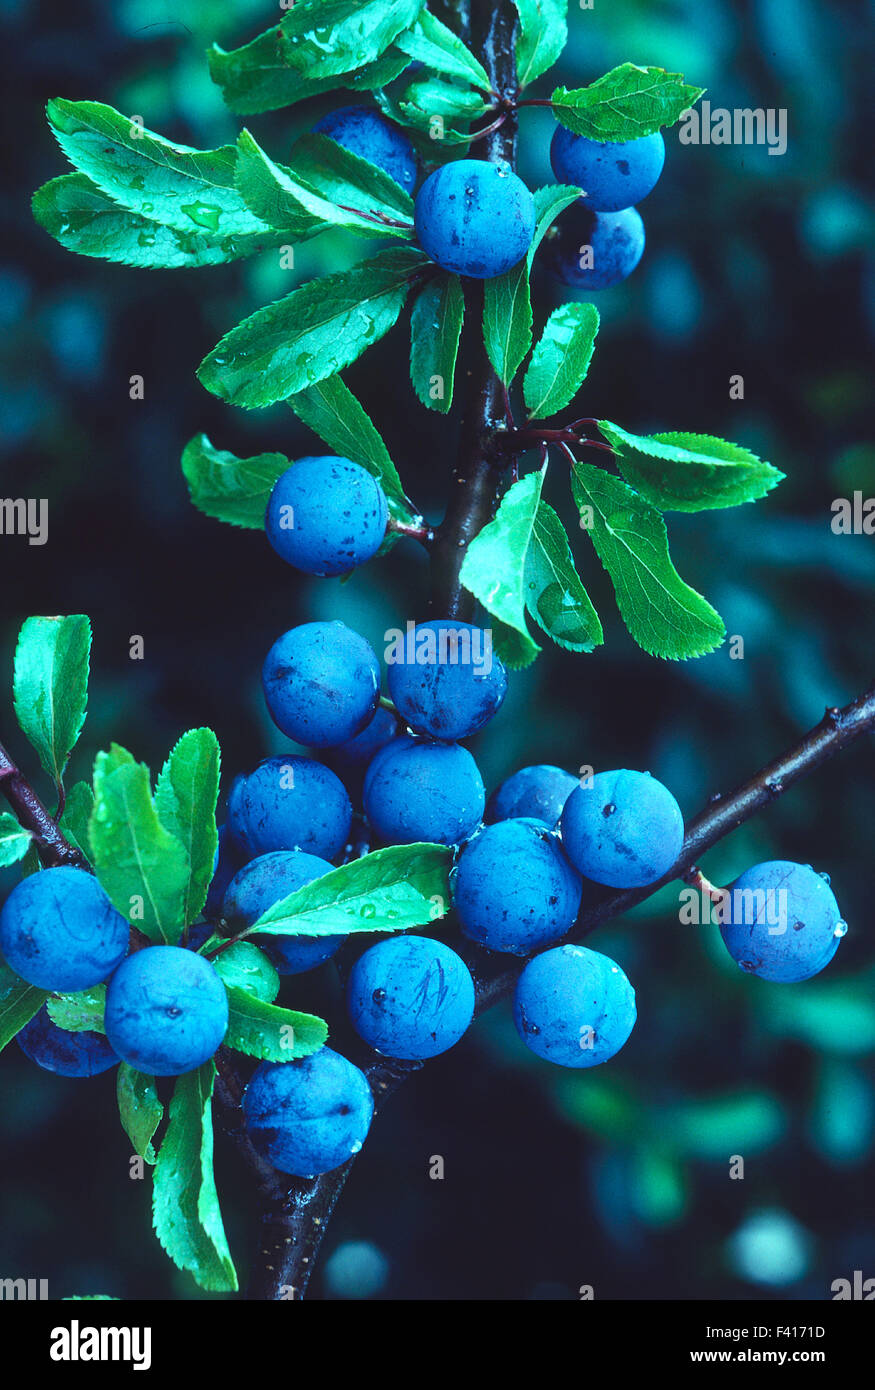 sloe; blackthorn; berries; Stock Photo